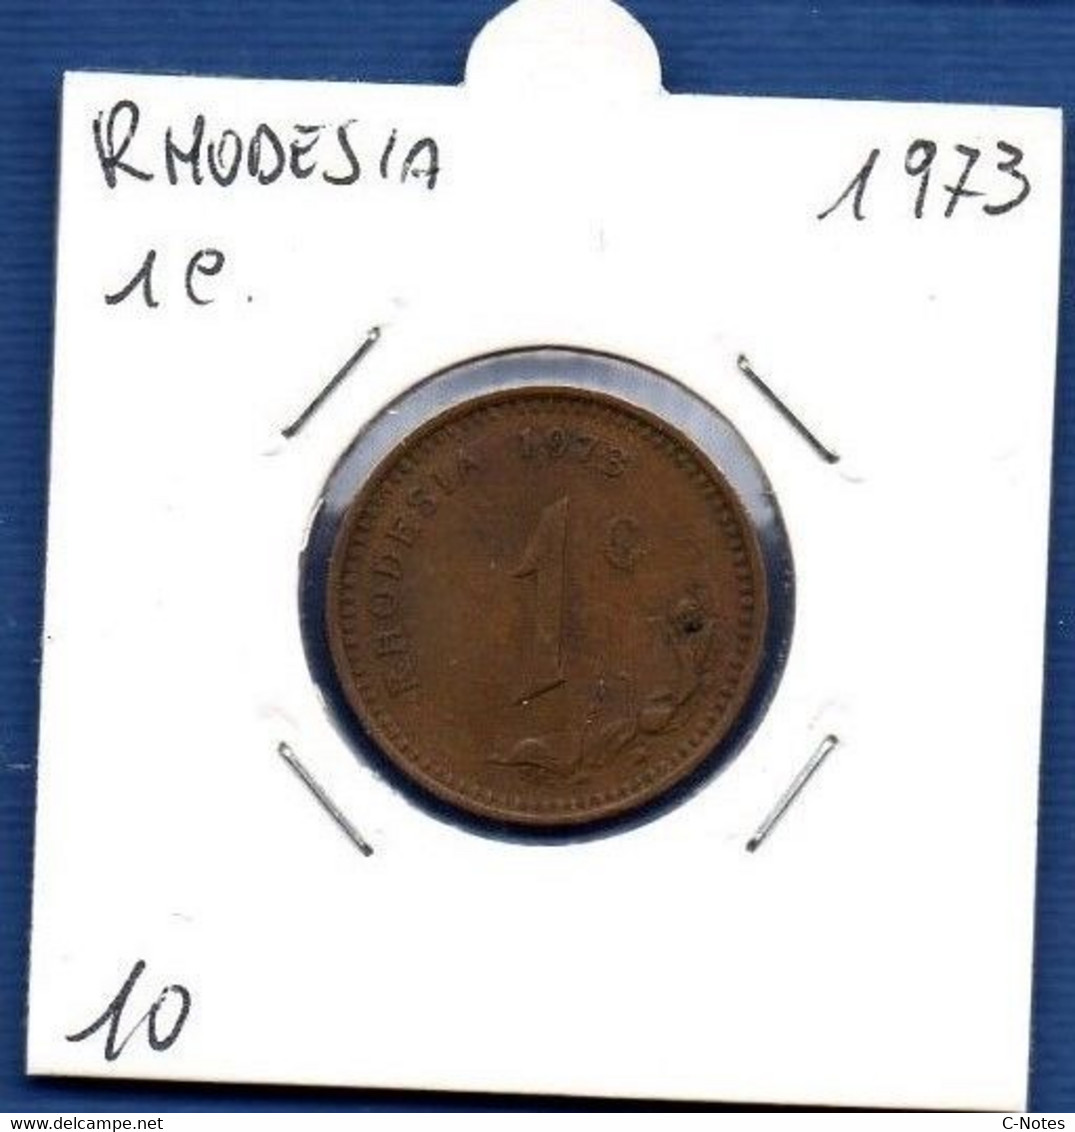 RHODESIA - 1 Cent 1973  -  See Photos - Km 10 - Rhodesia